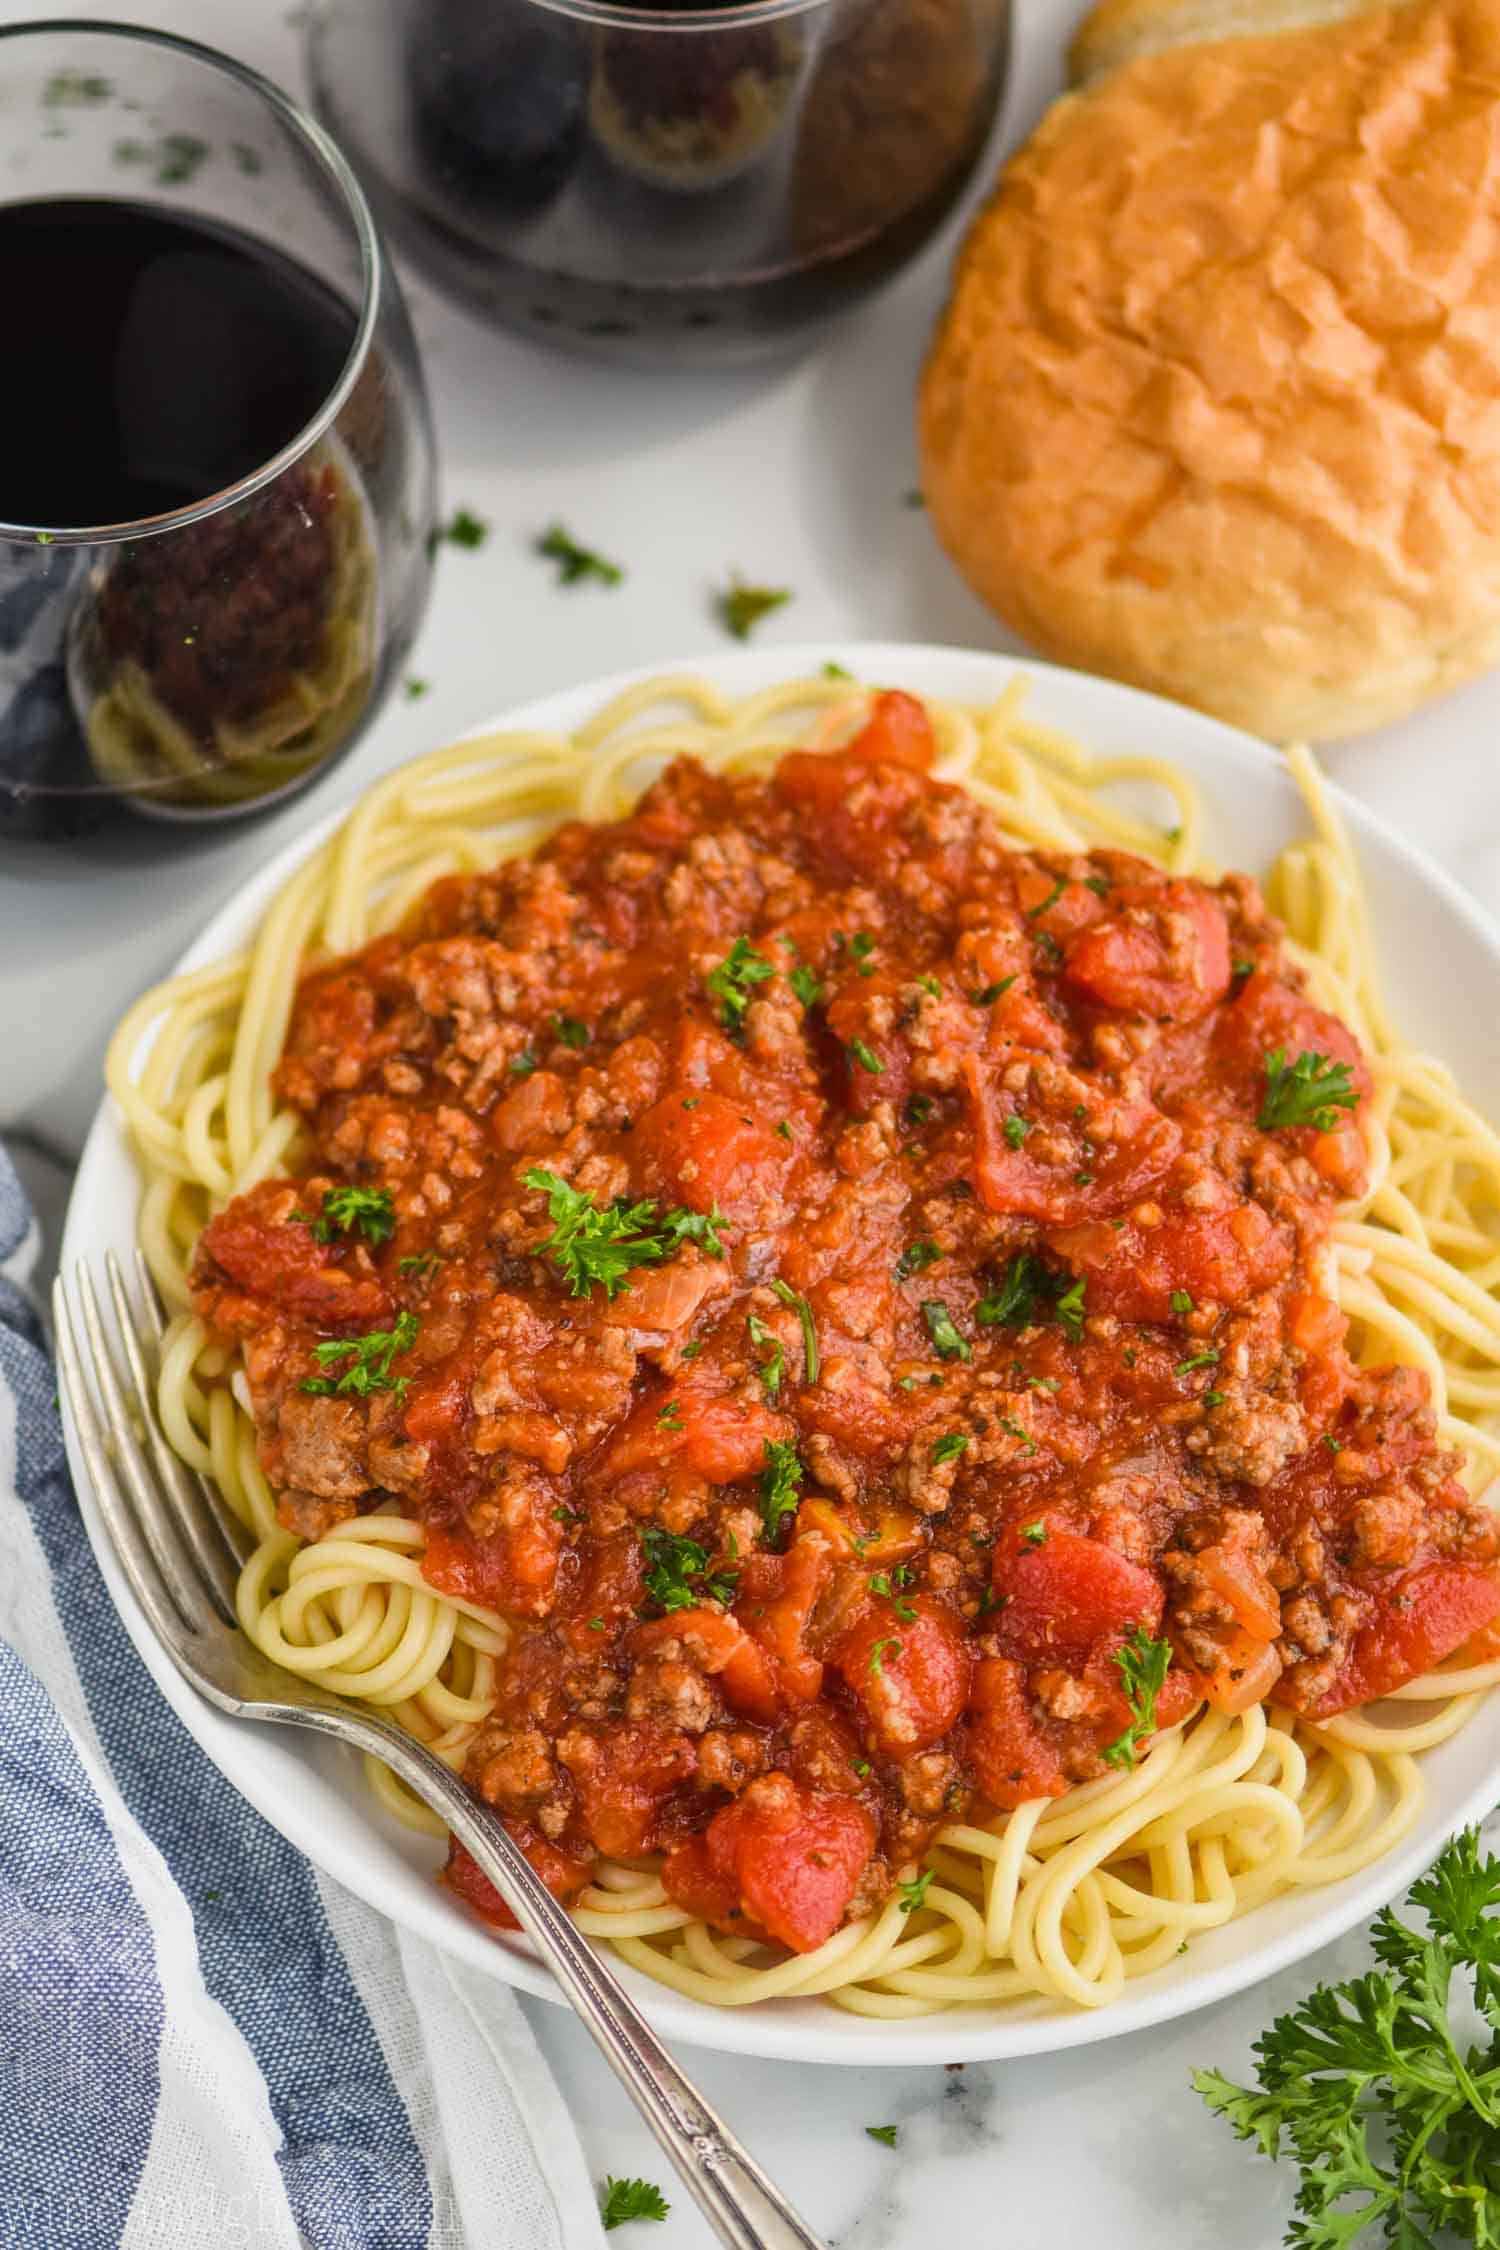 spaghetti sauce can